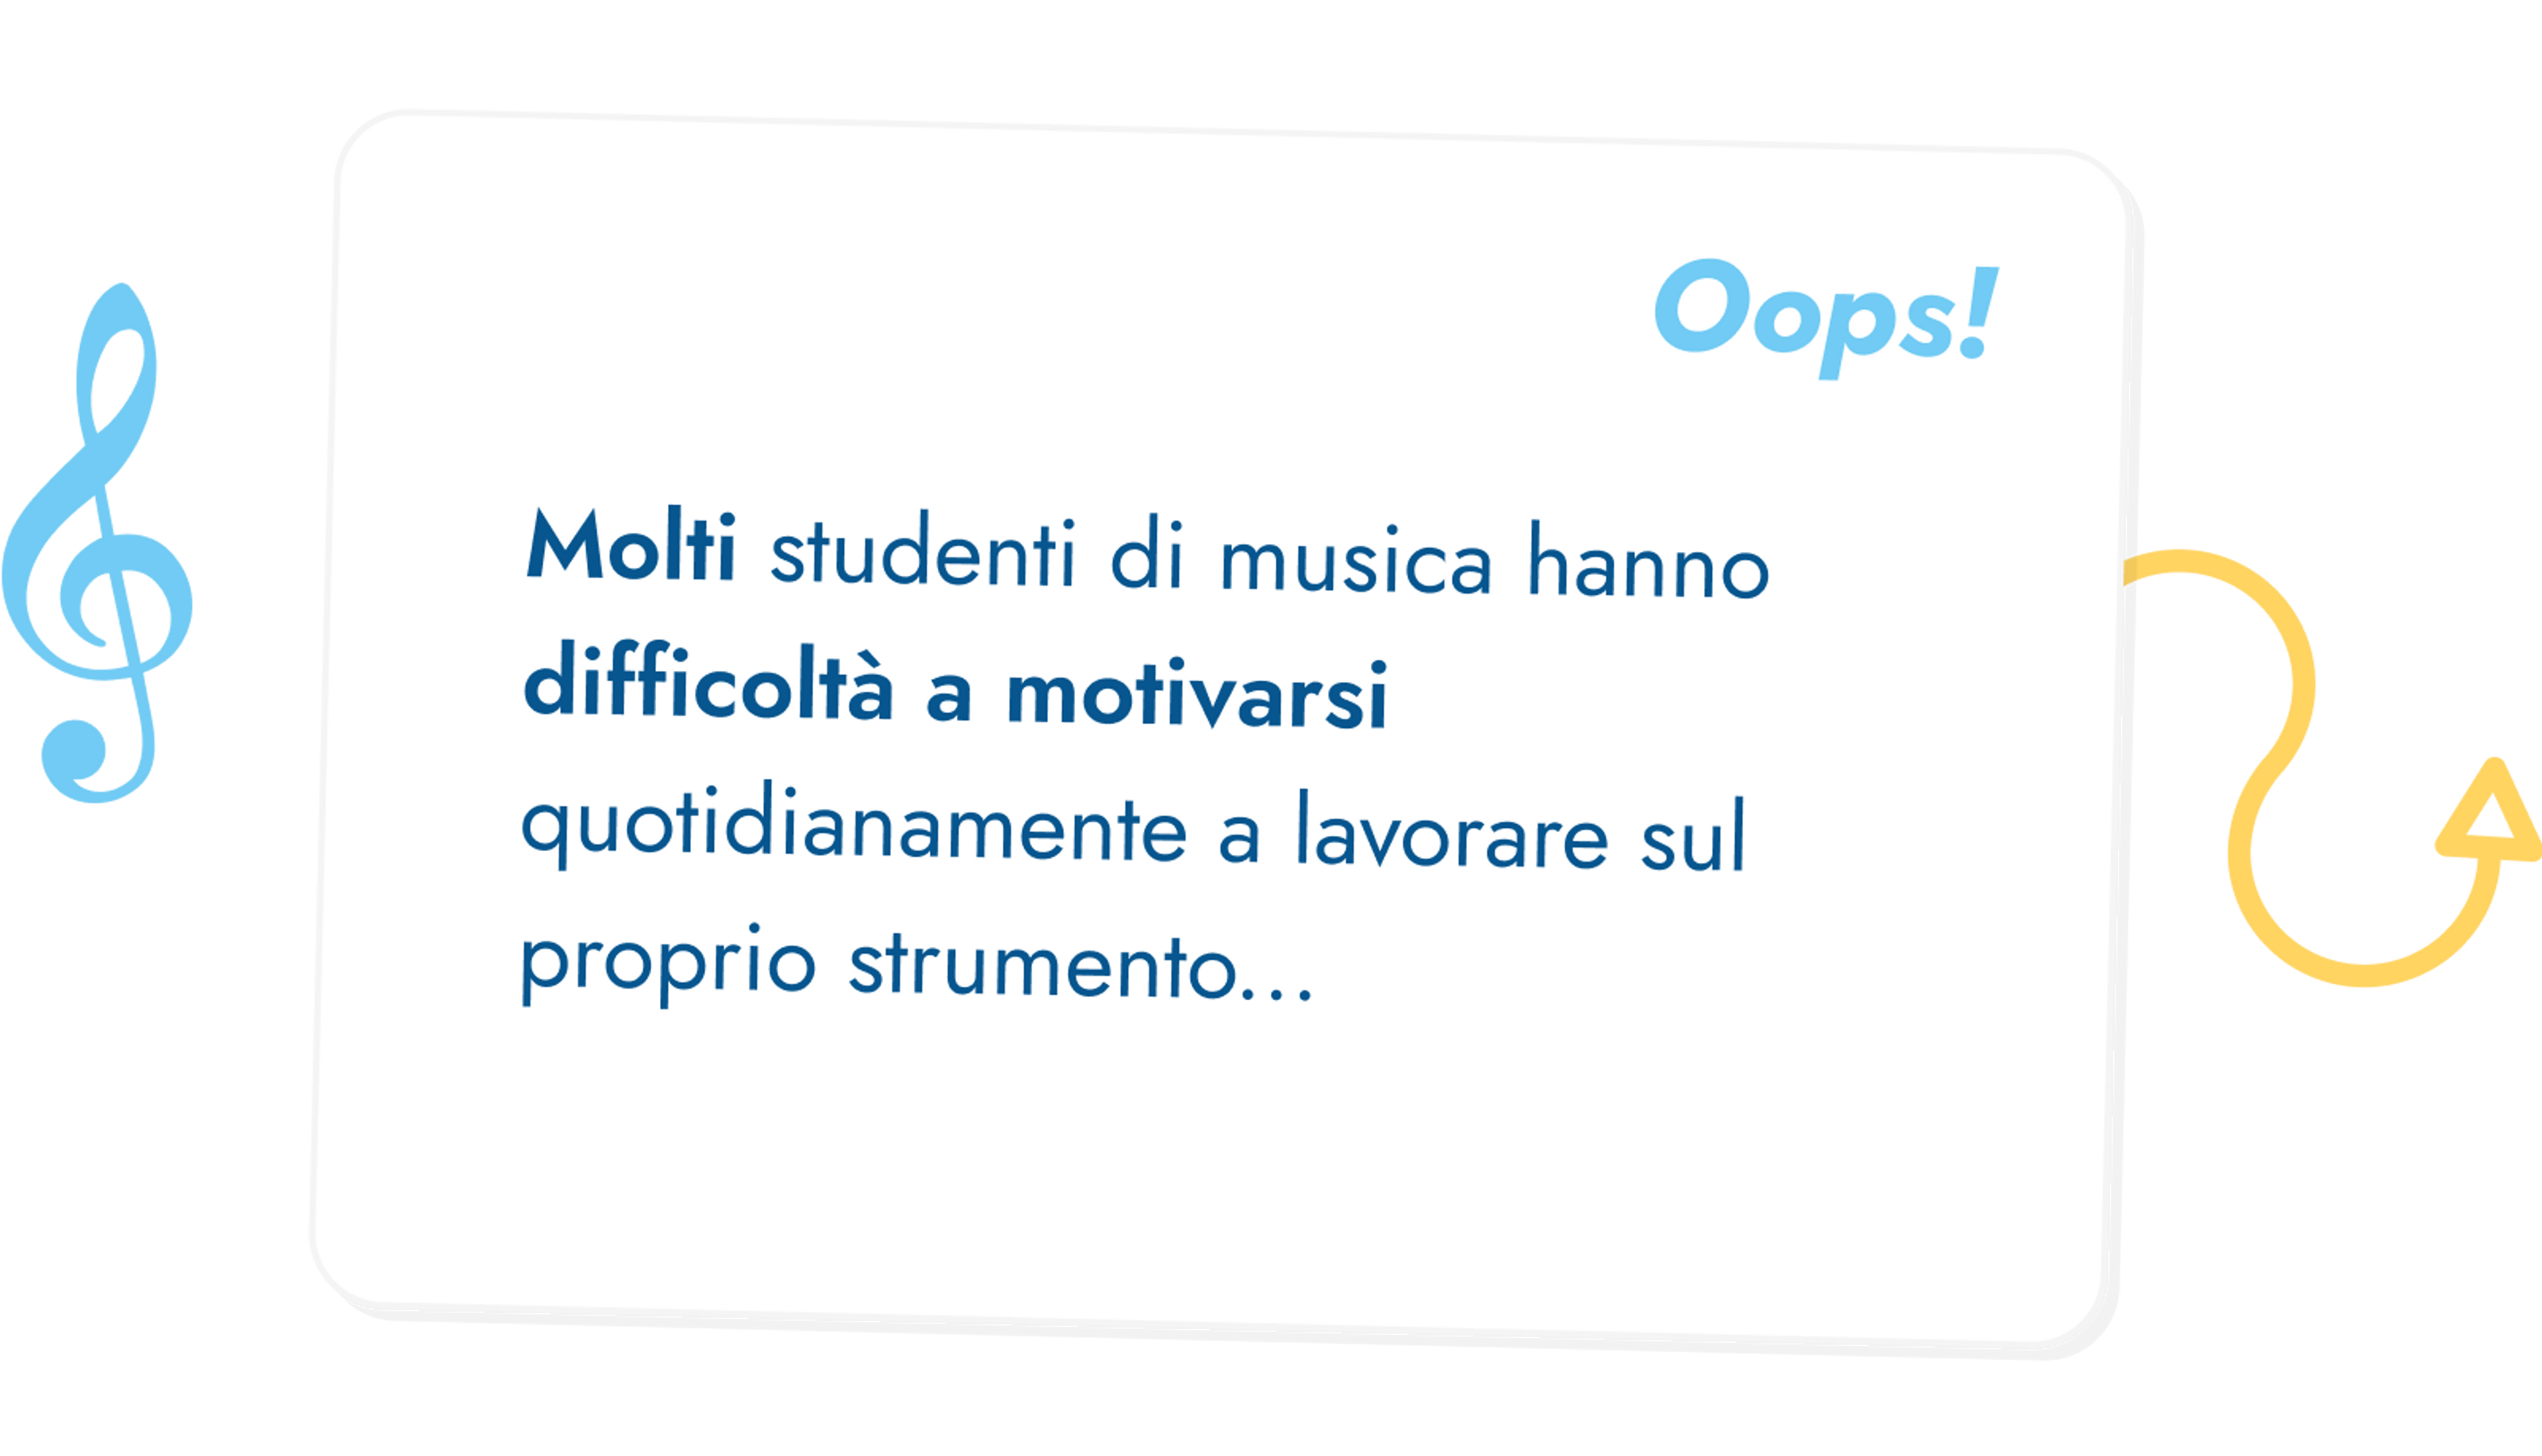 Molti studenti di musica hanno difficoltà a motivarsi quotidianamente a lavorare sul proprio strumento...